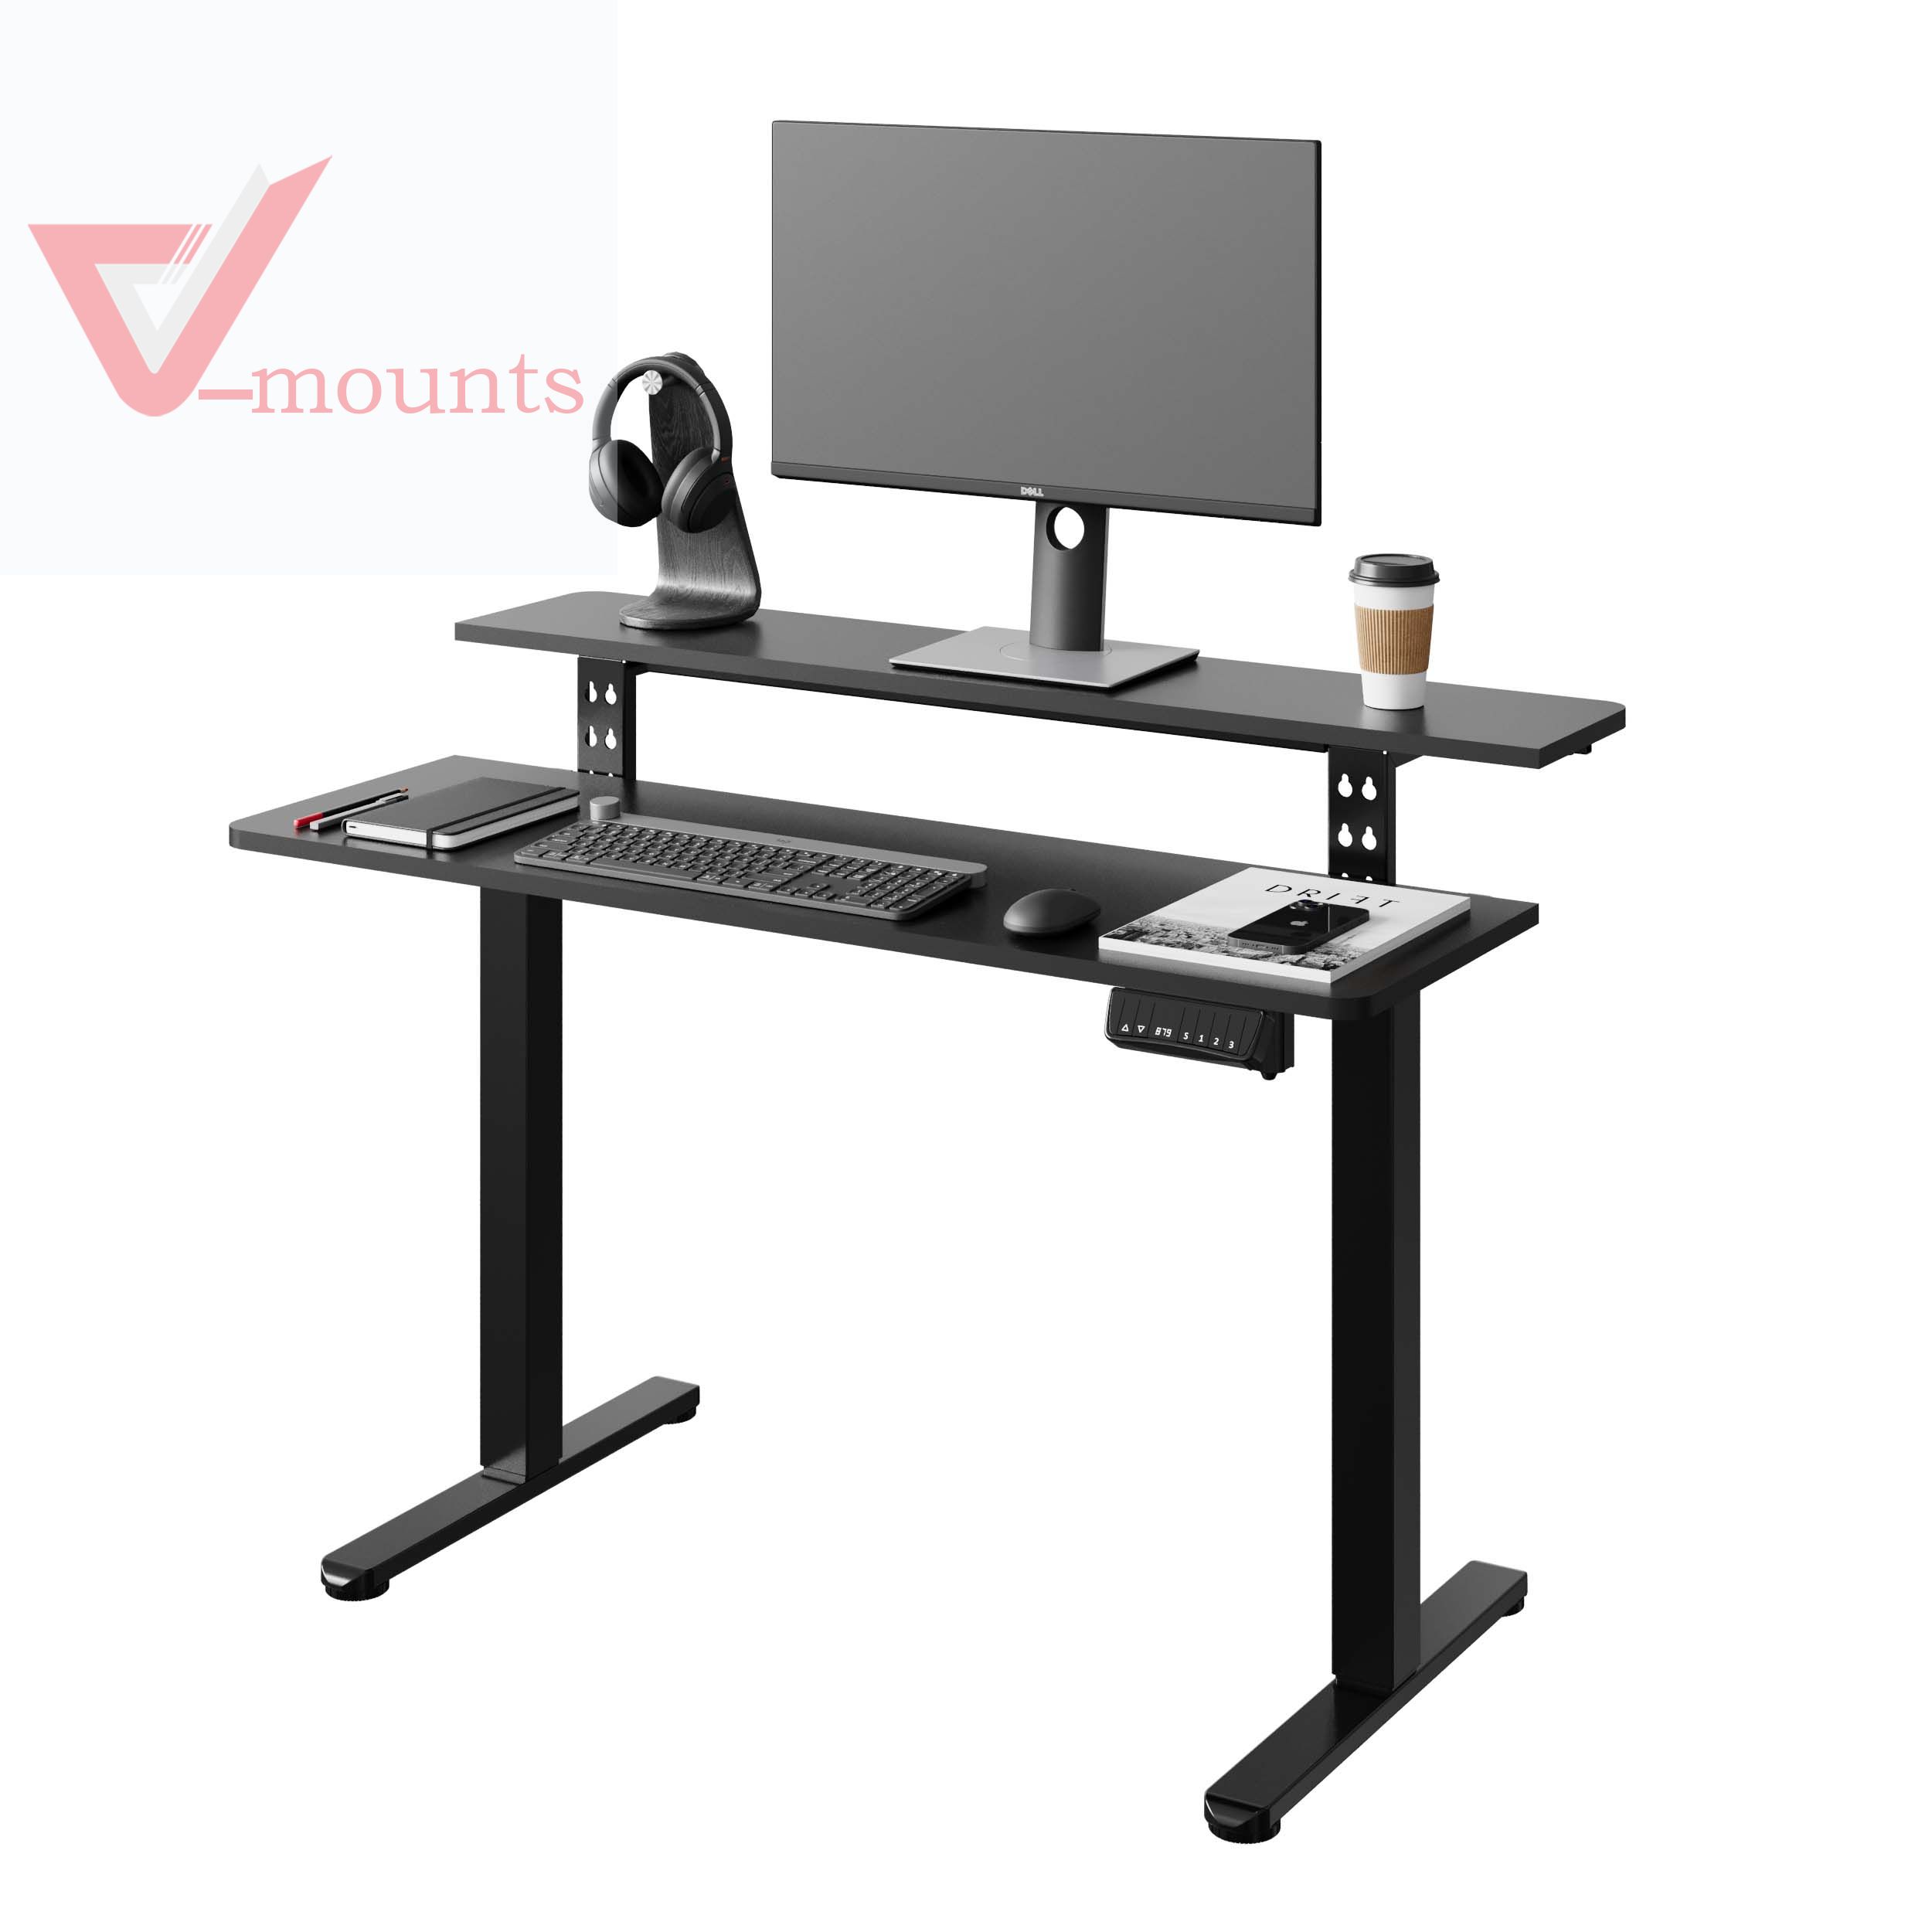 V-mounts L Shape Single Motor Electric Height Adjustable Office Desk VM-JSD5-02-L1